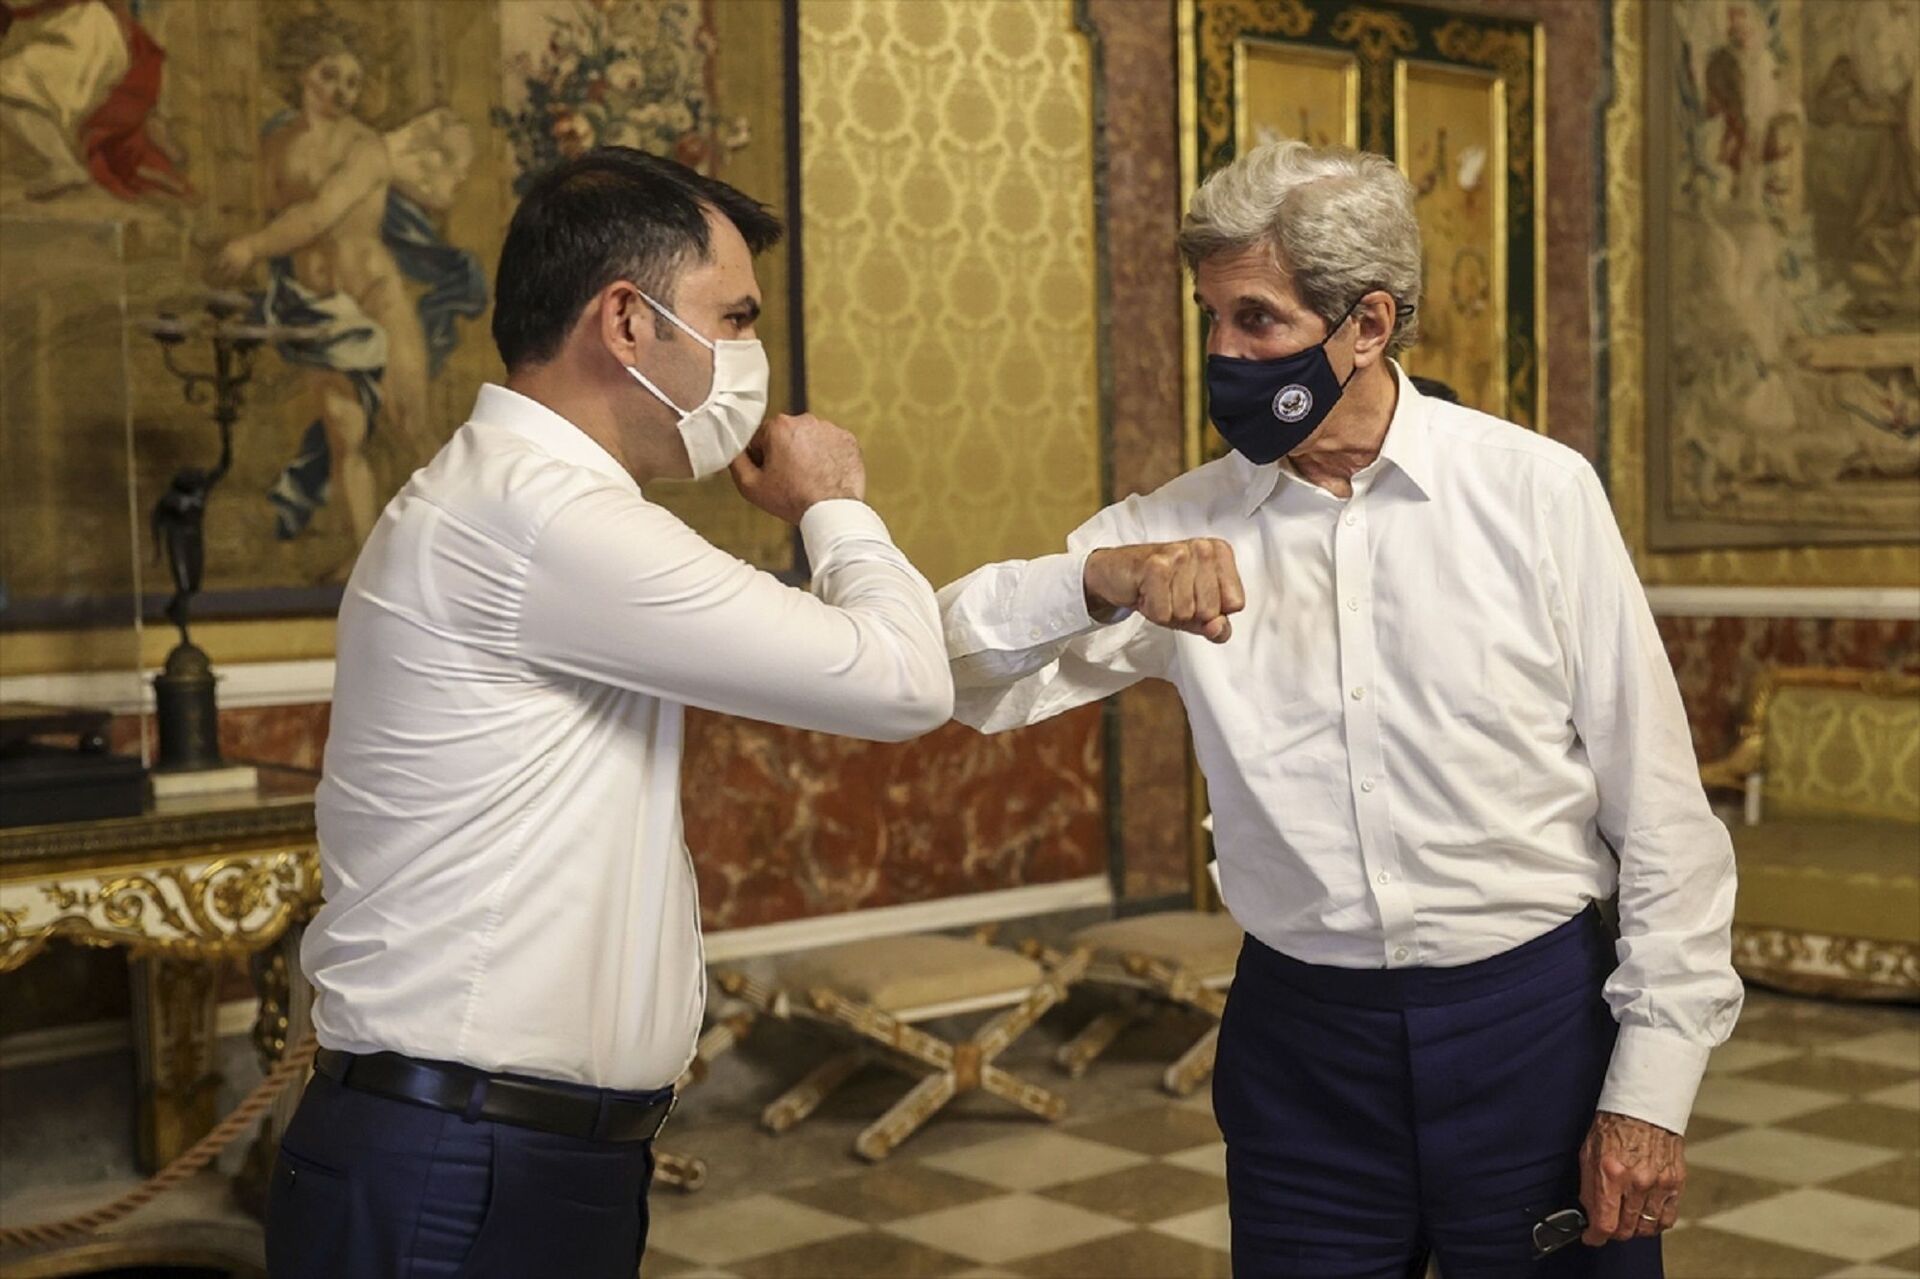 Çevre ve Şehricilik Bakanı Murat Kurum (solda), İtalya'nın Napoli Kentindeki G20 Çevre ile İklim ve Enerji Bakanları Toplantısının yapıldığı Tarihi Palazzo Reale Sarayı'nda (Kraliyet Sarayı) ABD İklim Müzakerecisi John Kerry (sağda) ile bir araya geldi. - Sputnik Türkiye, 1920, 10.08.2021